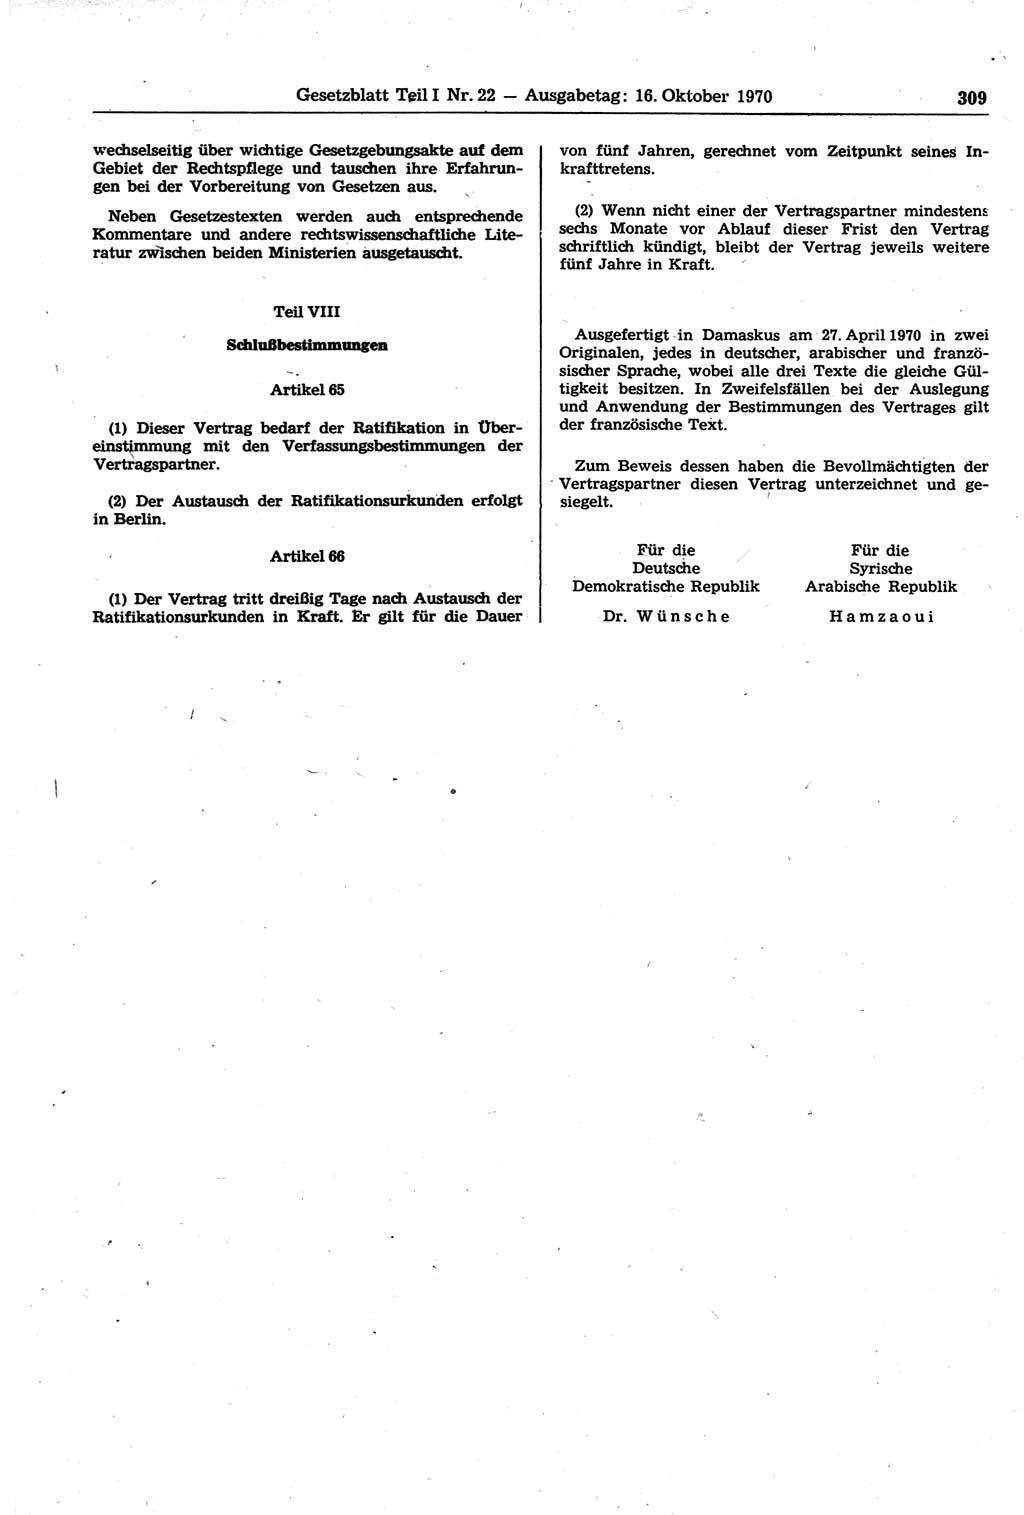 Gesetzblatt (GBl.) der Deutschen Demokratischen Republik (DDR) Teil Ⅰ 1970, Seite 309 (GBl. DDR Ⅰ 1970, S. 309)